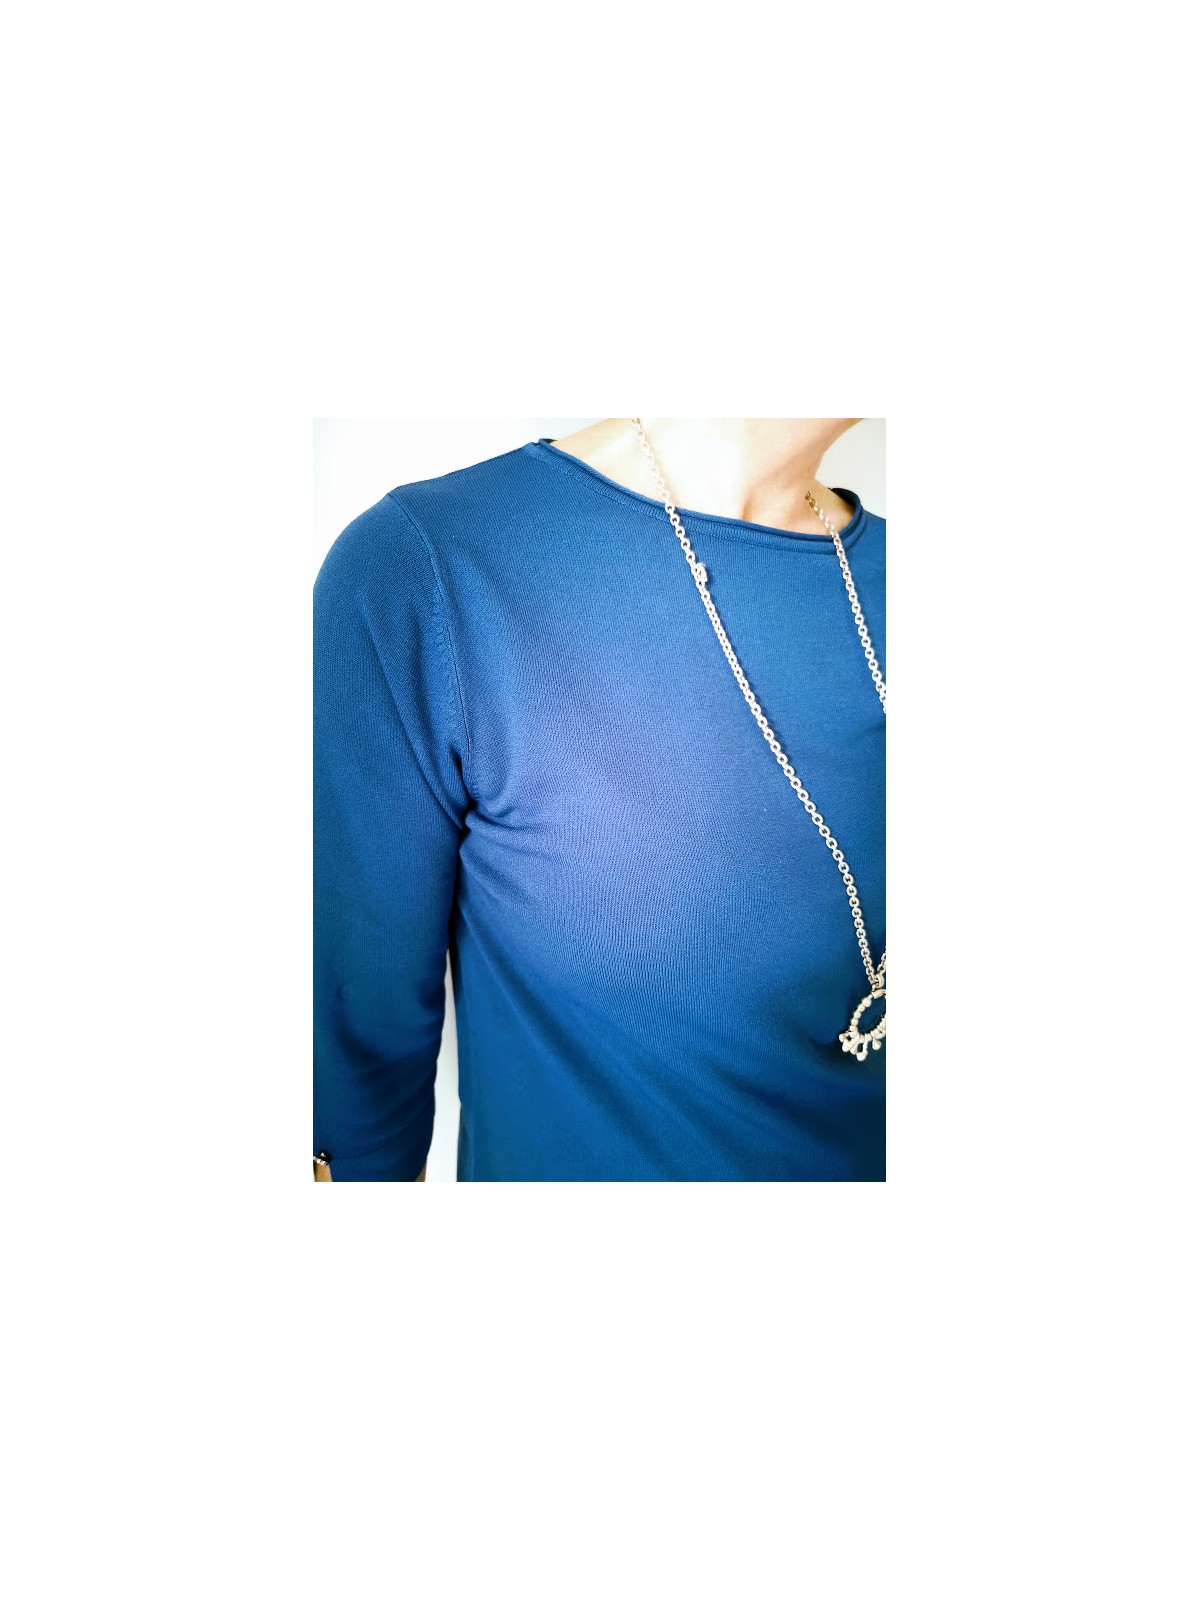 T-shirt manches longues bleu l 4 vue rapprochée l Tilleulmenthe mode boutique de vêtements femme en ligne